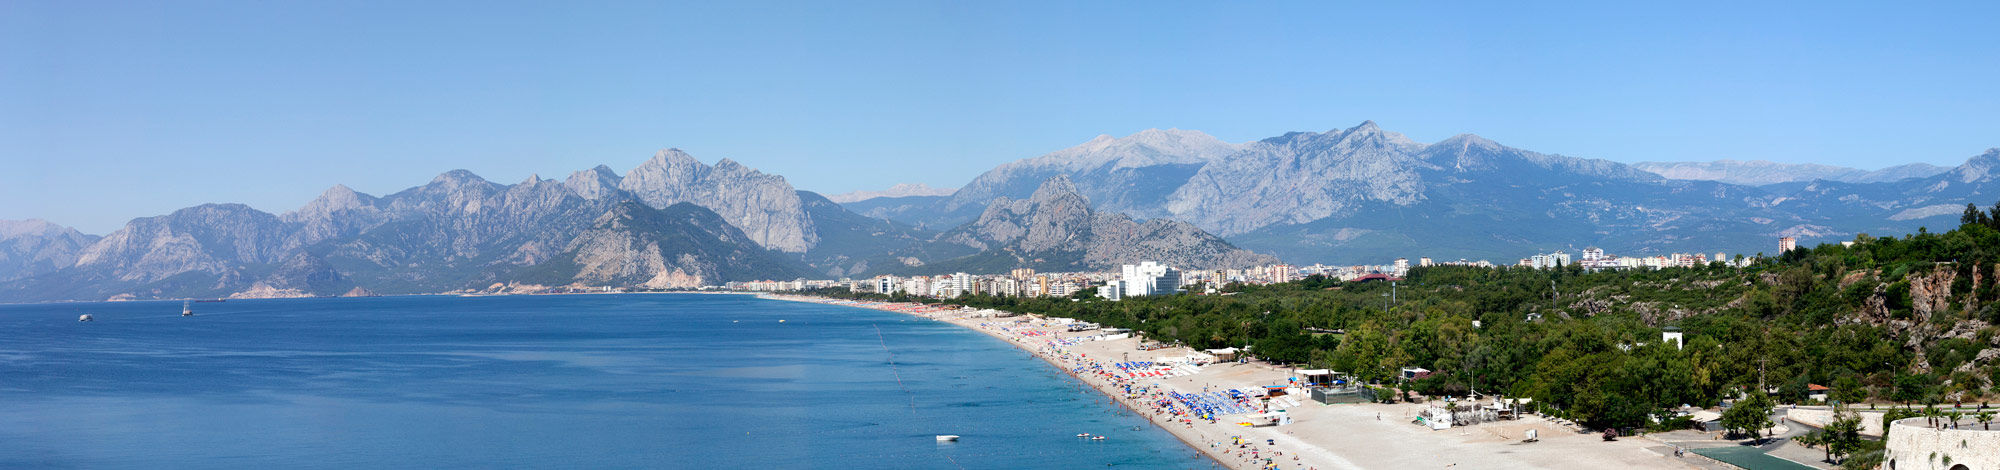 Antalya & Belek, TUI MAGIC LIFE Jacaranda vom 2022-05-25 bis 2022-06-01 für 695 EUR p.P.